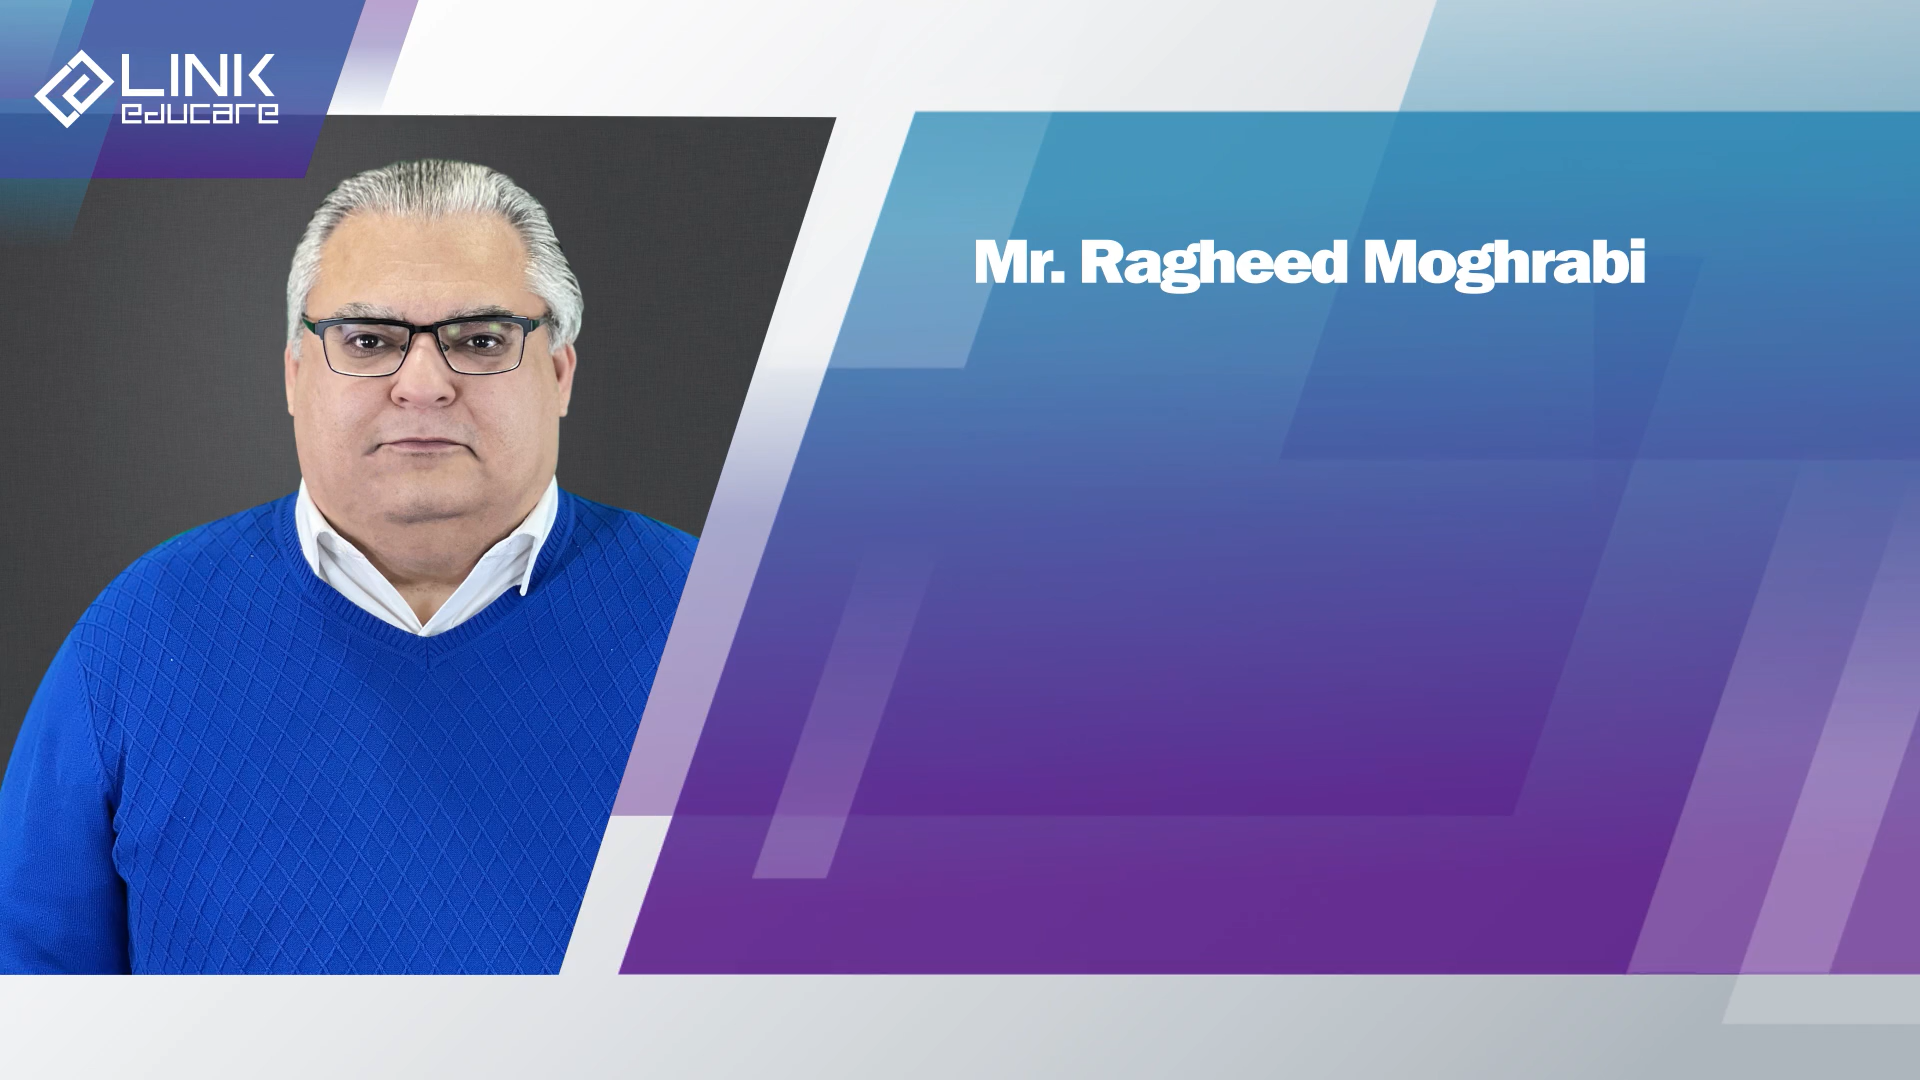 Mr. Ragheed Moughrabi